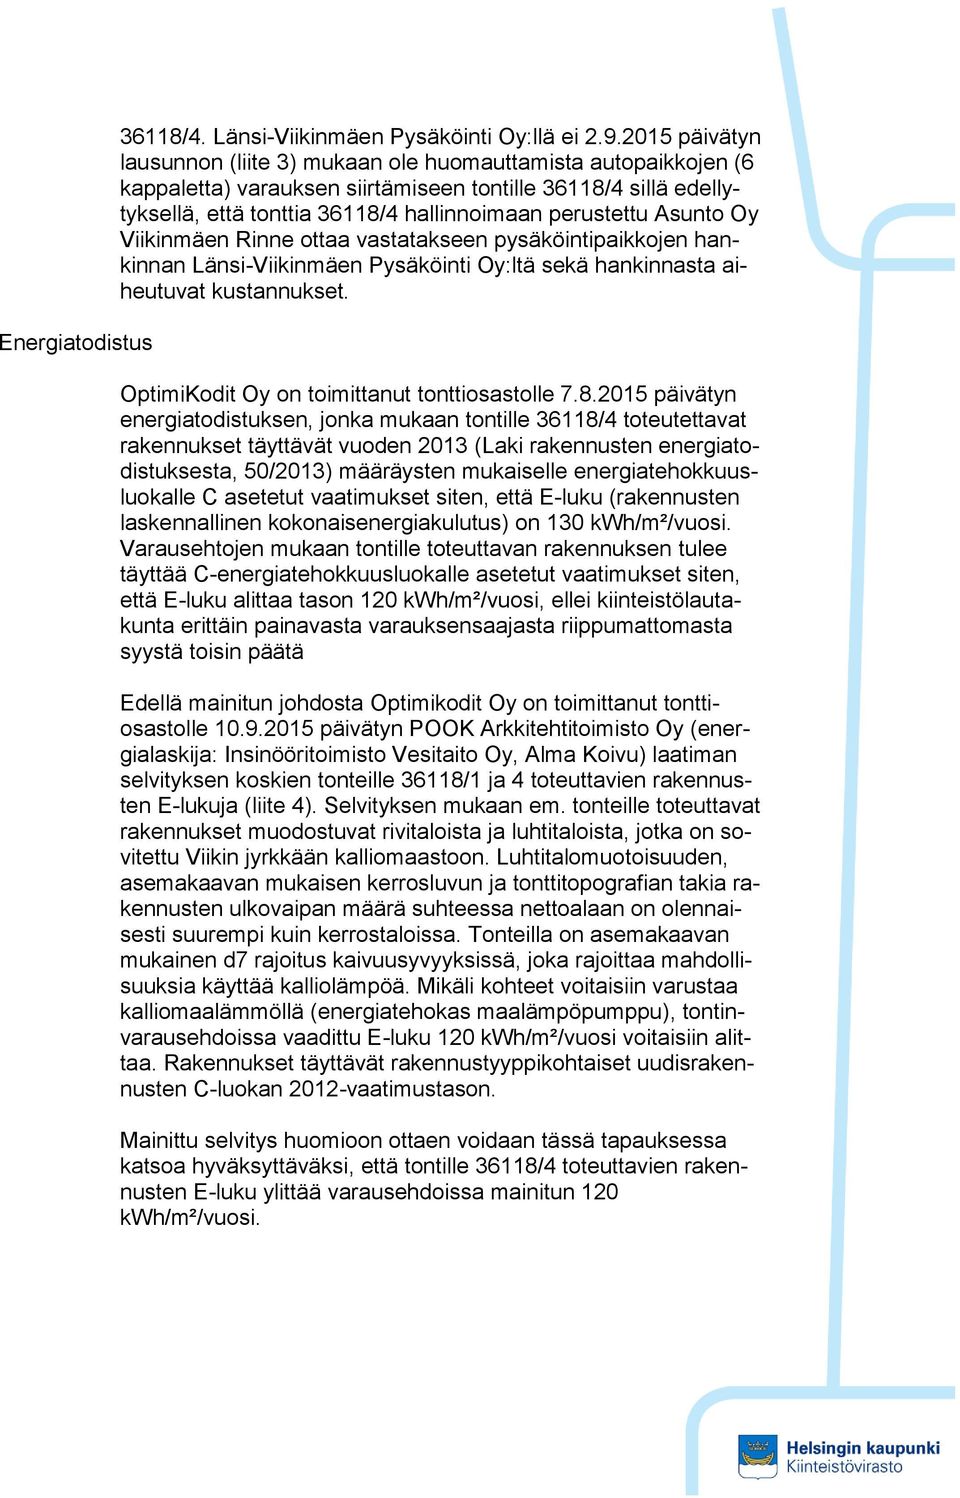 Asunto Oy Viikinmäen Rinne ottaa vastatakseen pysäköintipaikkojen hankinnan Länsi-Viikinmäen Pysäköinti Oy:ltä sekä hankinnasta aiheutuvat kustannukset.